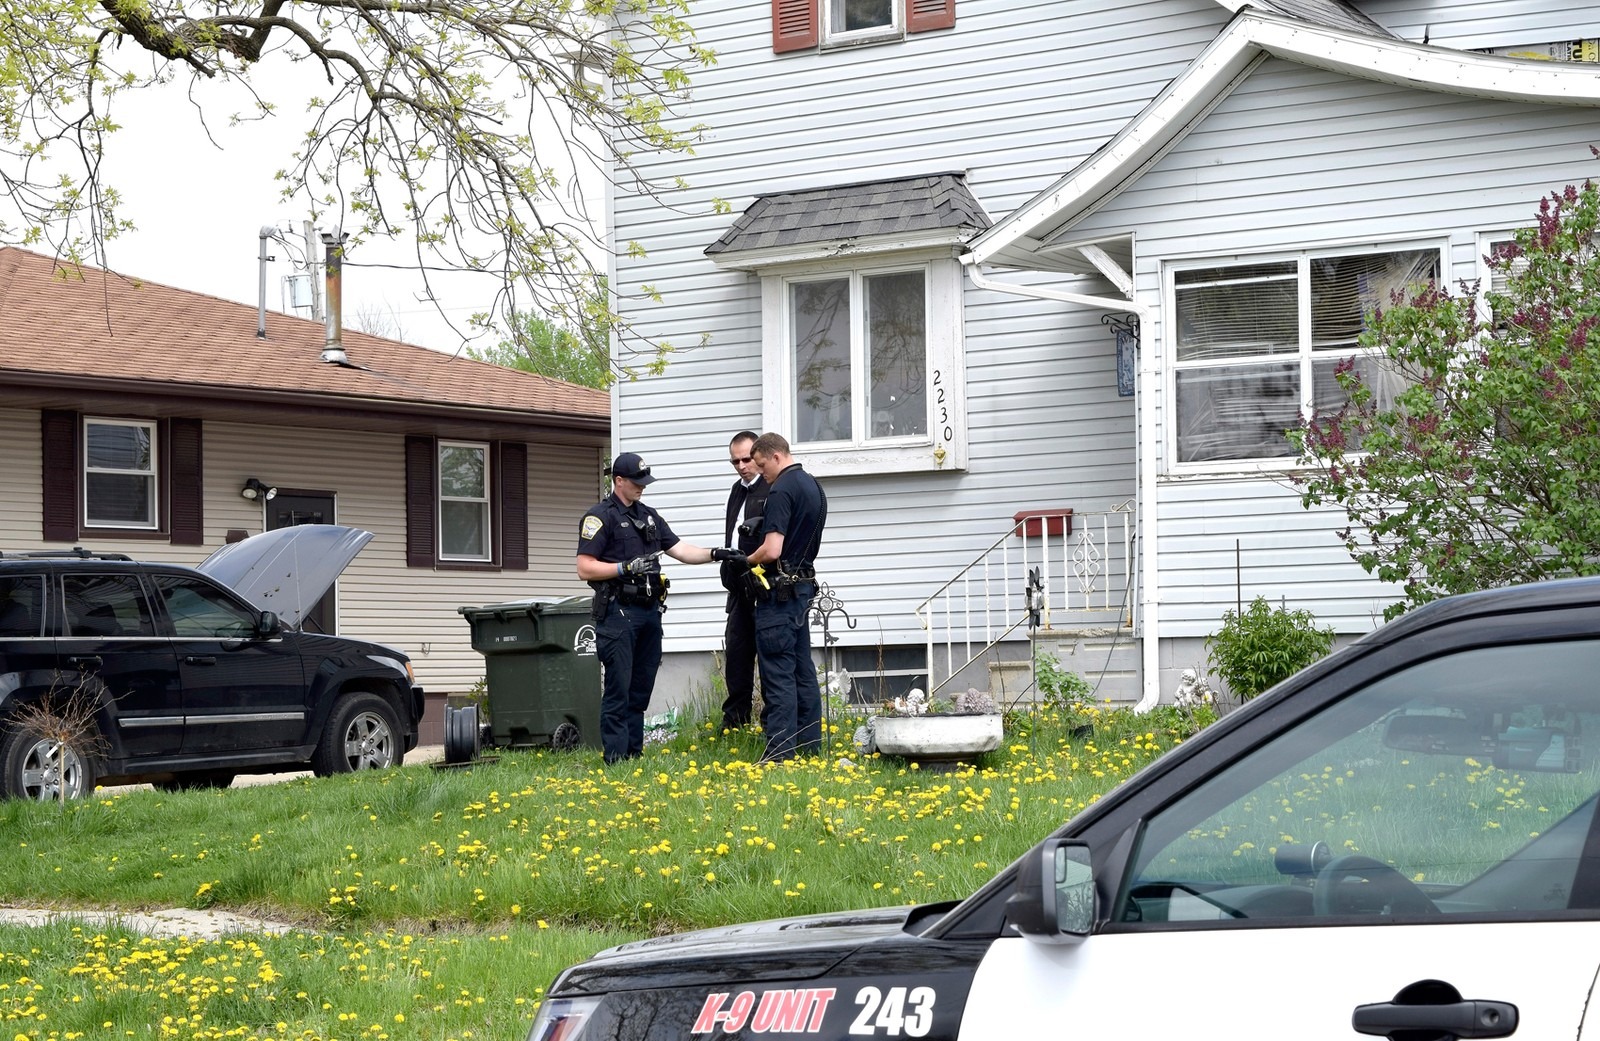 Policiais em frente à casa em que ocorreu o acidente nesta quarta-feira (9) (Foto: Joe Sutter/The Messenger via AP)